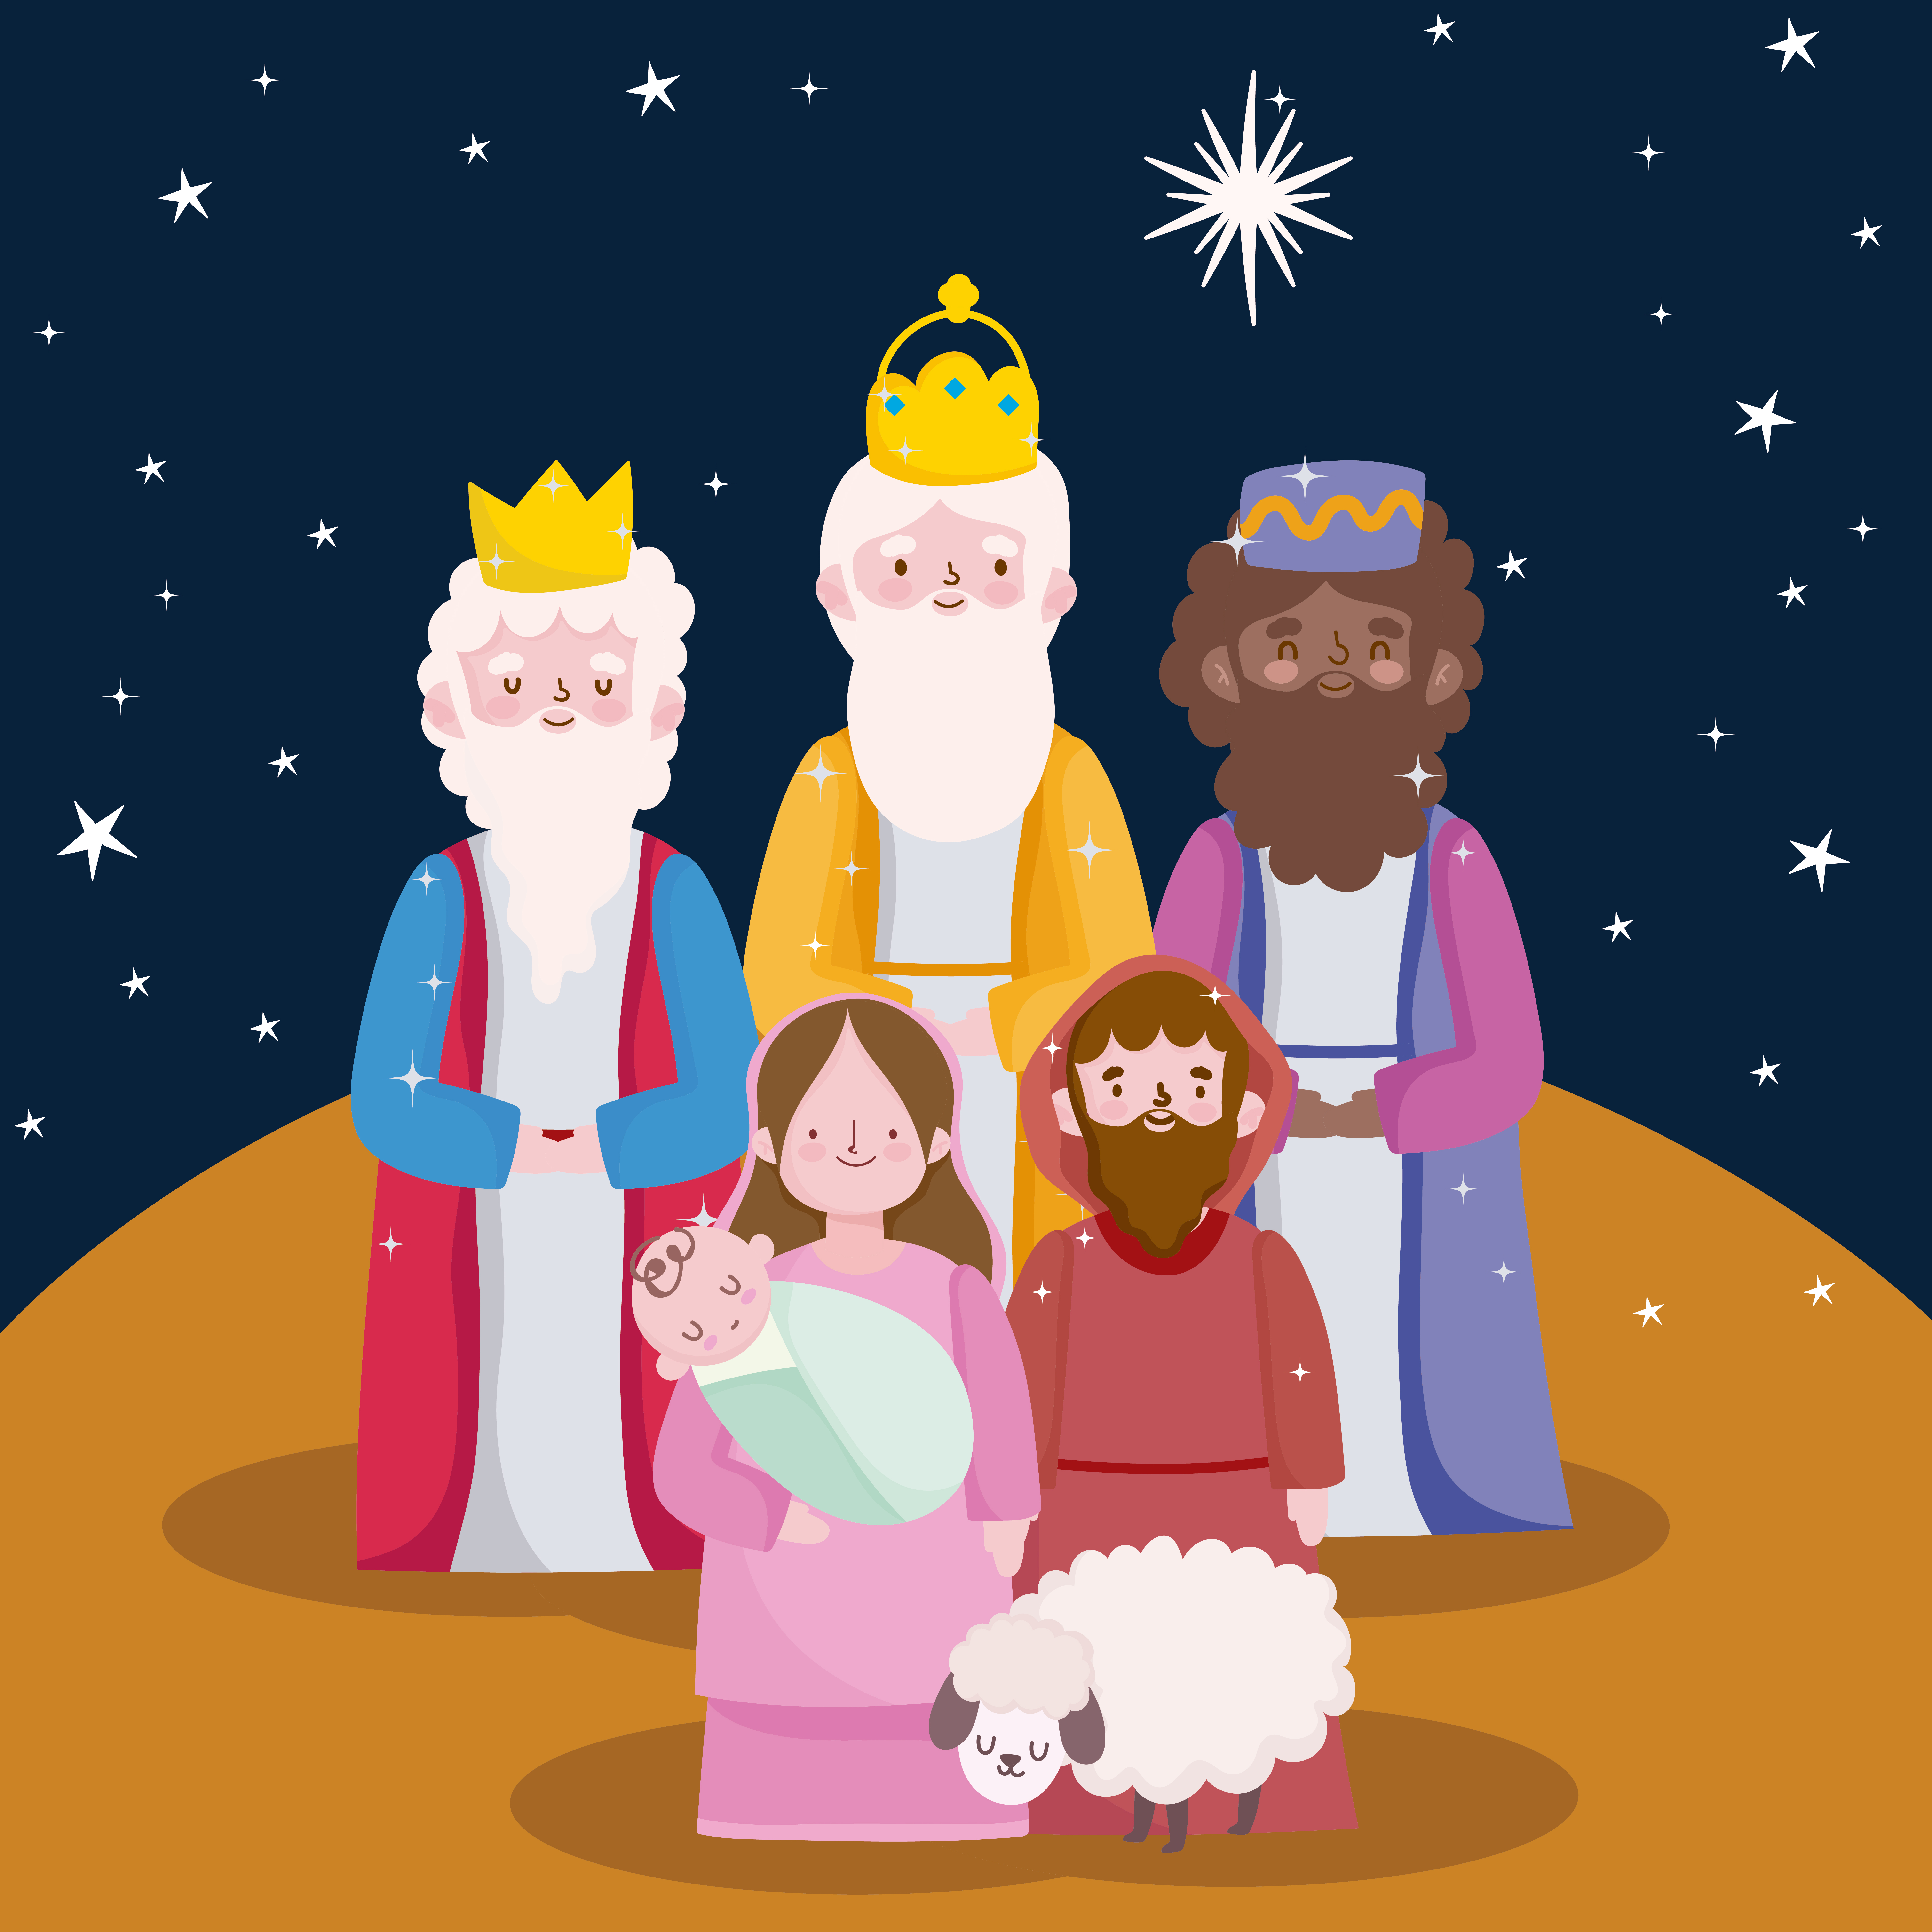 happy epiphany, three wise kings joseph baby jesus and sheep cartoon  3744230 Vector Art at Vecteezy